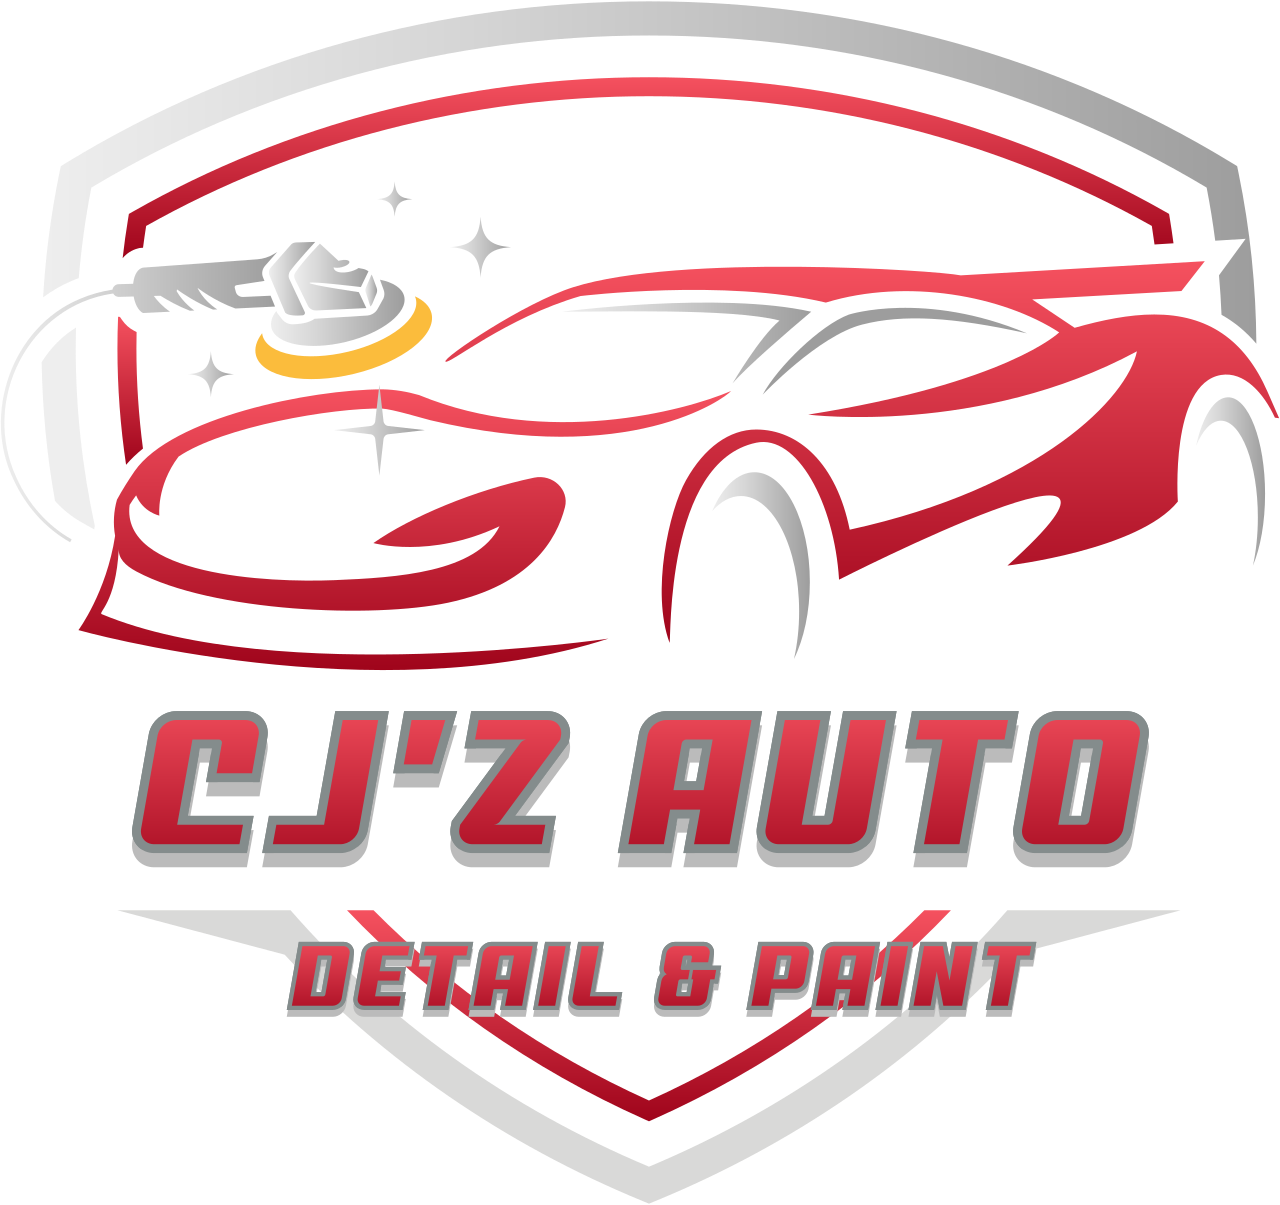 CJ’z Auto's logo